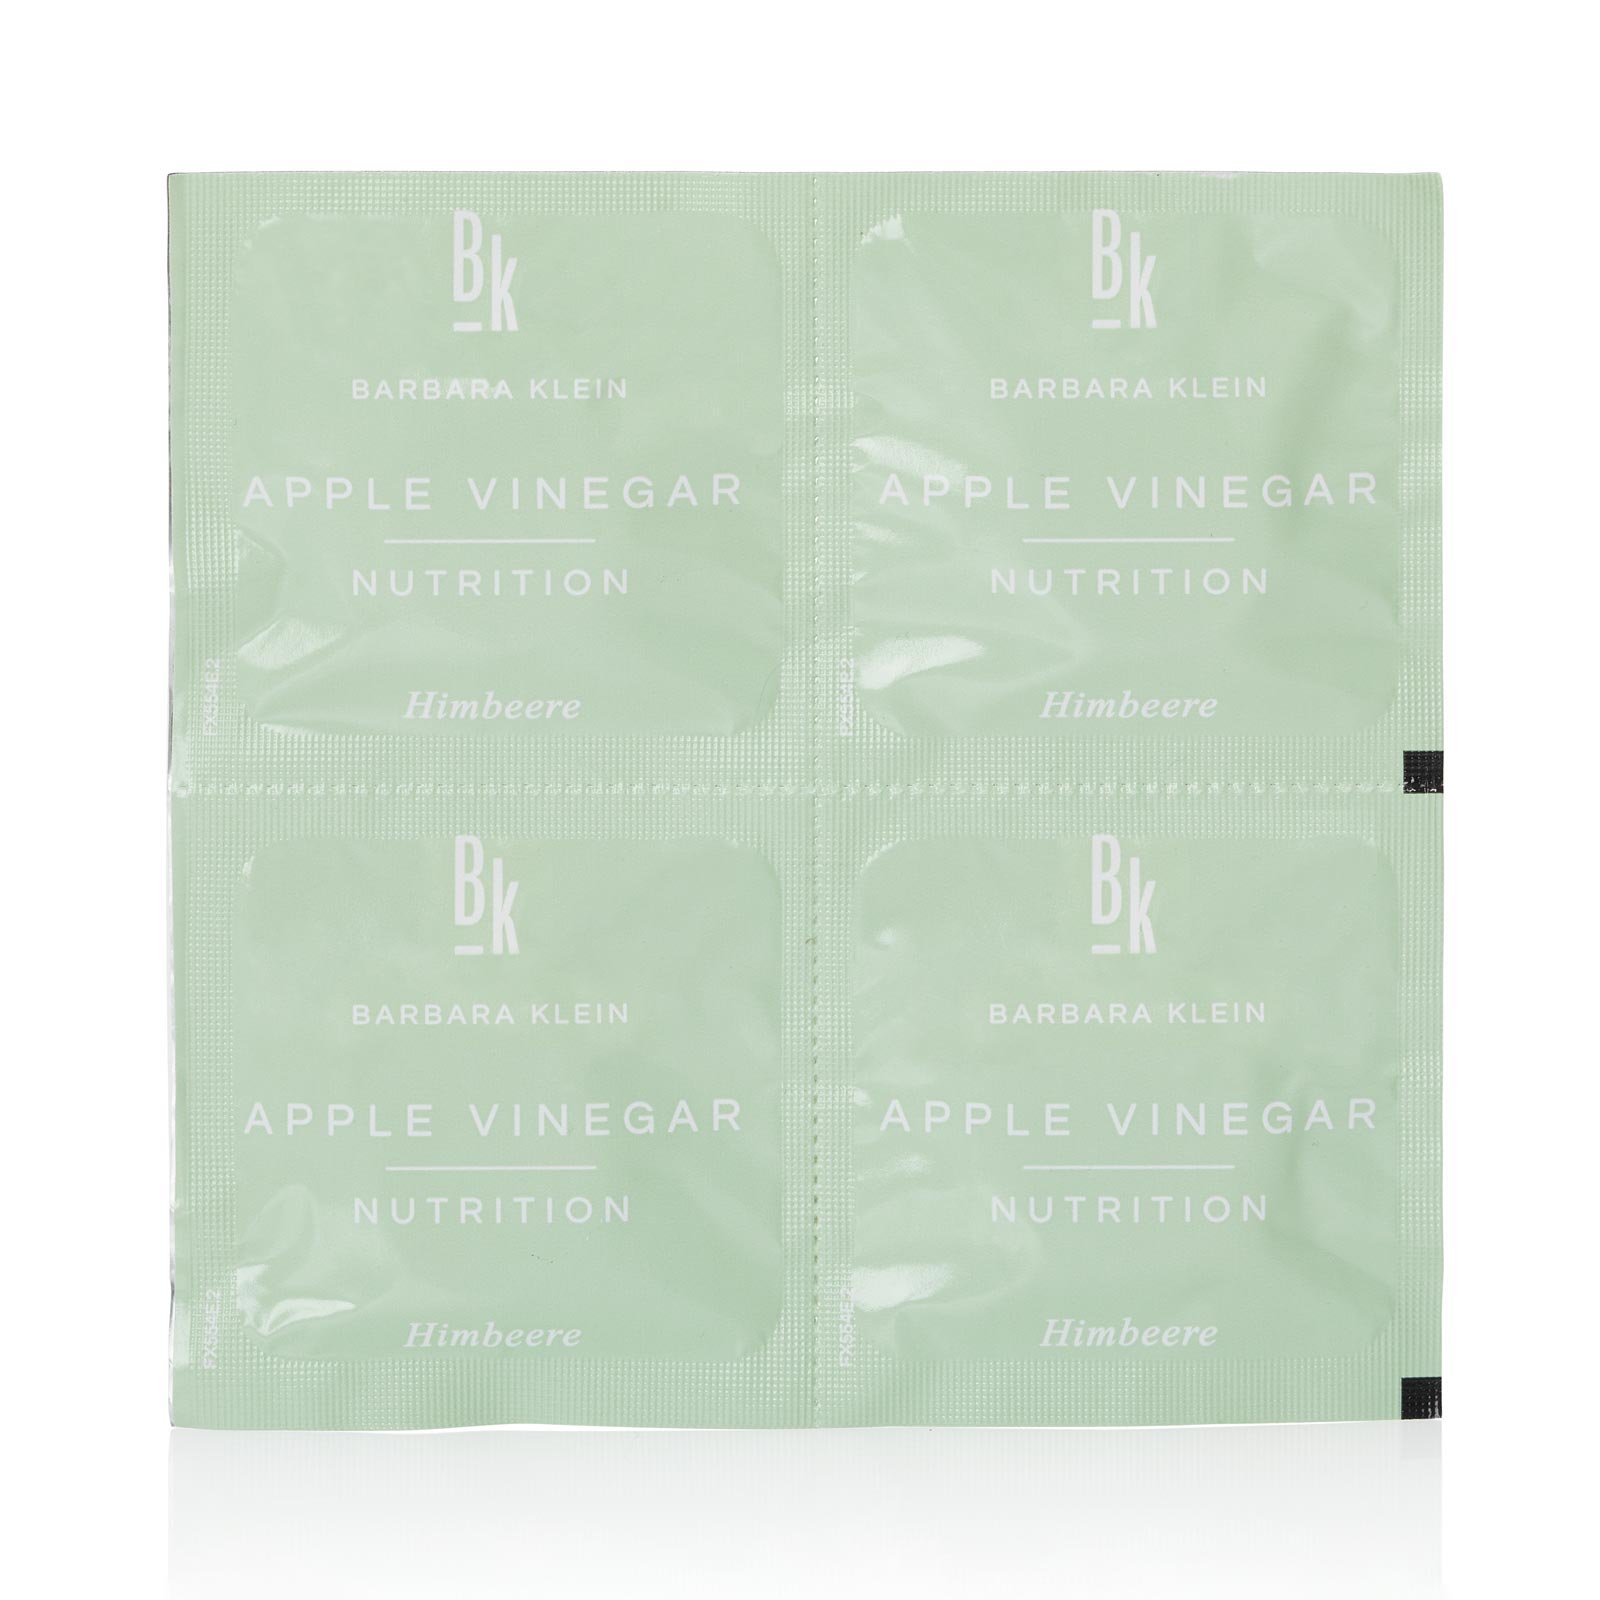 Barbara Klein Apple Vinegar Erfrischungsgetränk Himbeere Produktbild Tabletten Frontansicht